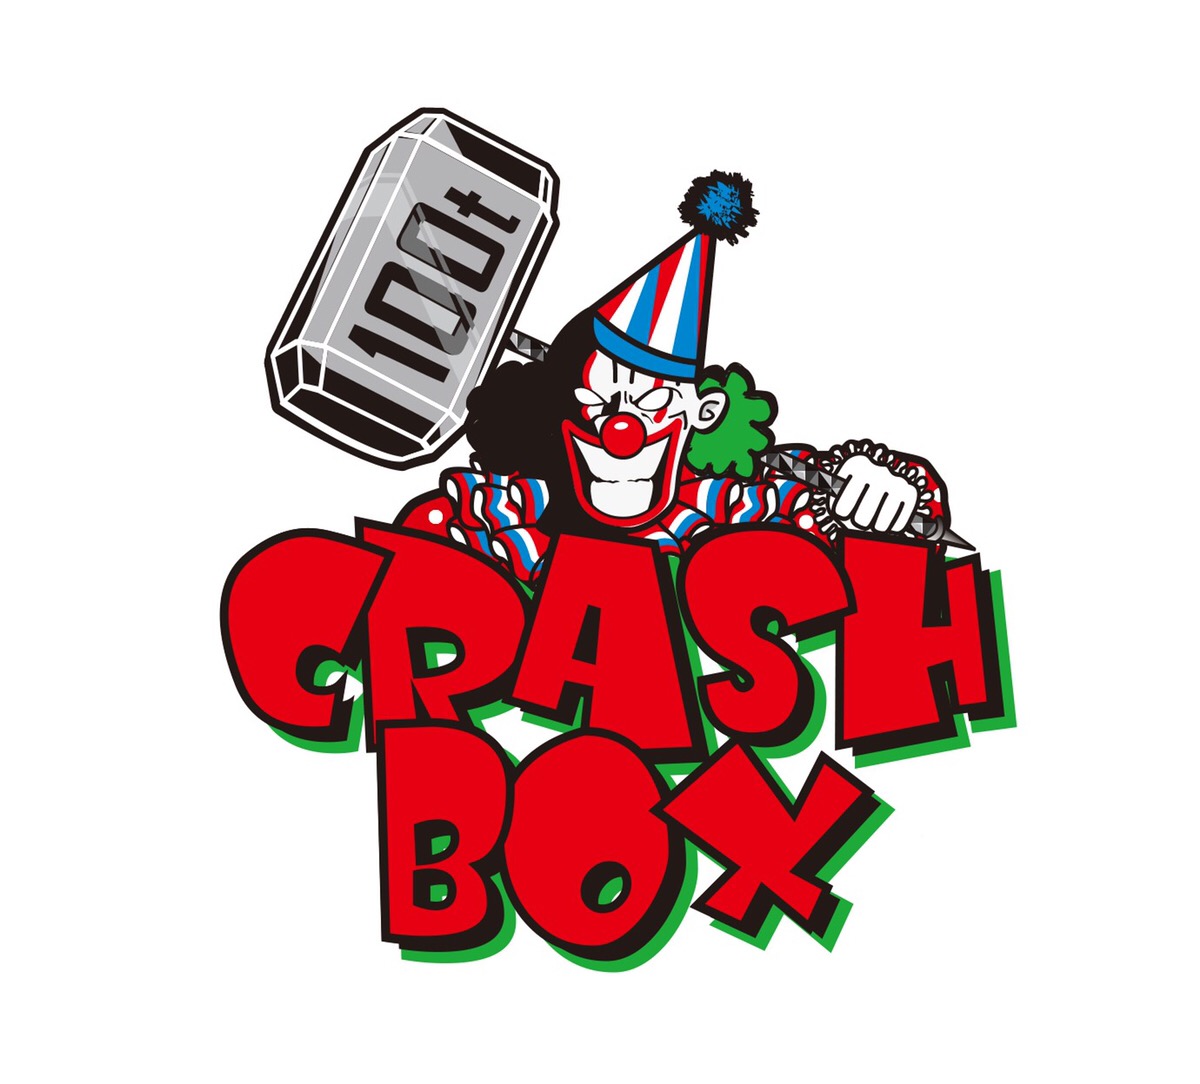 西日本初 思う存分 物がぶっ壊せる 新感覚アミューズメント施設 Crash Box クラッシュボックス が大阪心斎橋にオープン Crashboxのプレスリリース